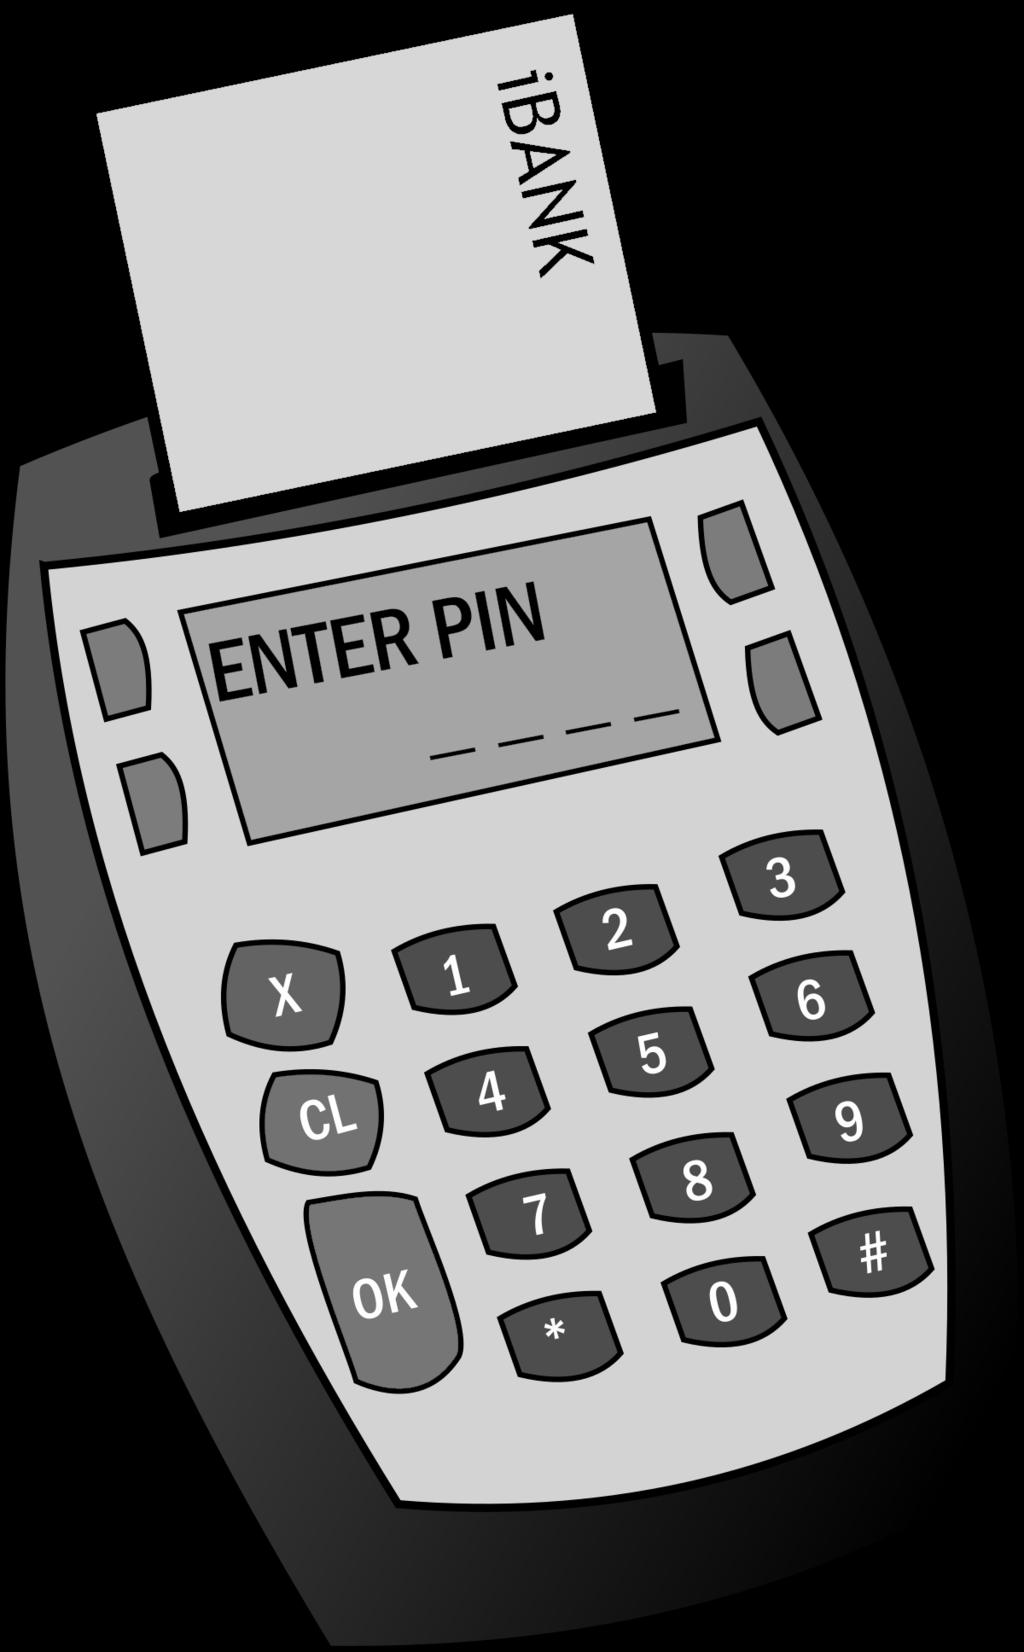 0p, 0p 40p 0p 0p 0p 0p, 0p 30p 4. The FSM below models the control logic of a chip & PIN card payment terminal.